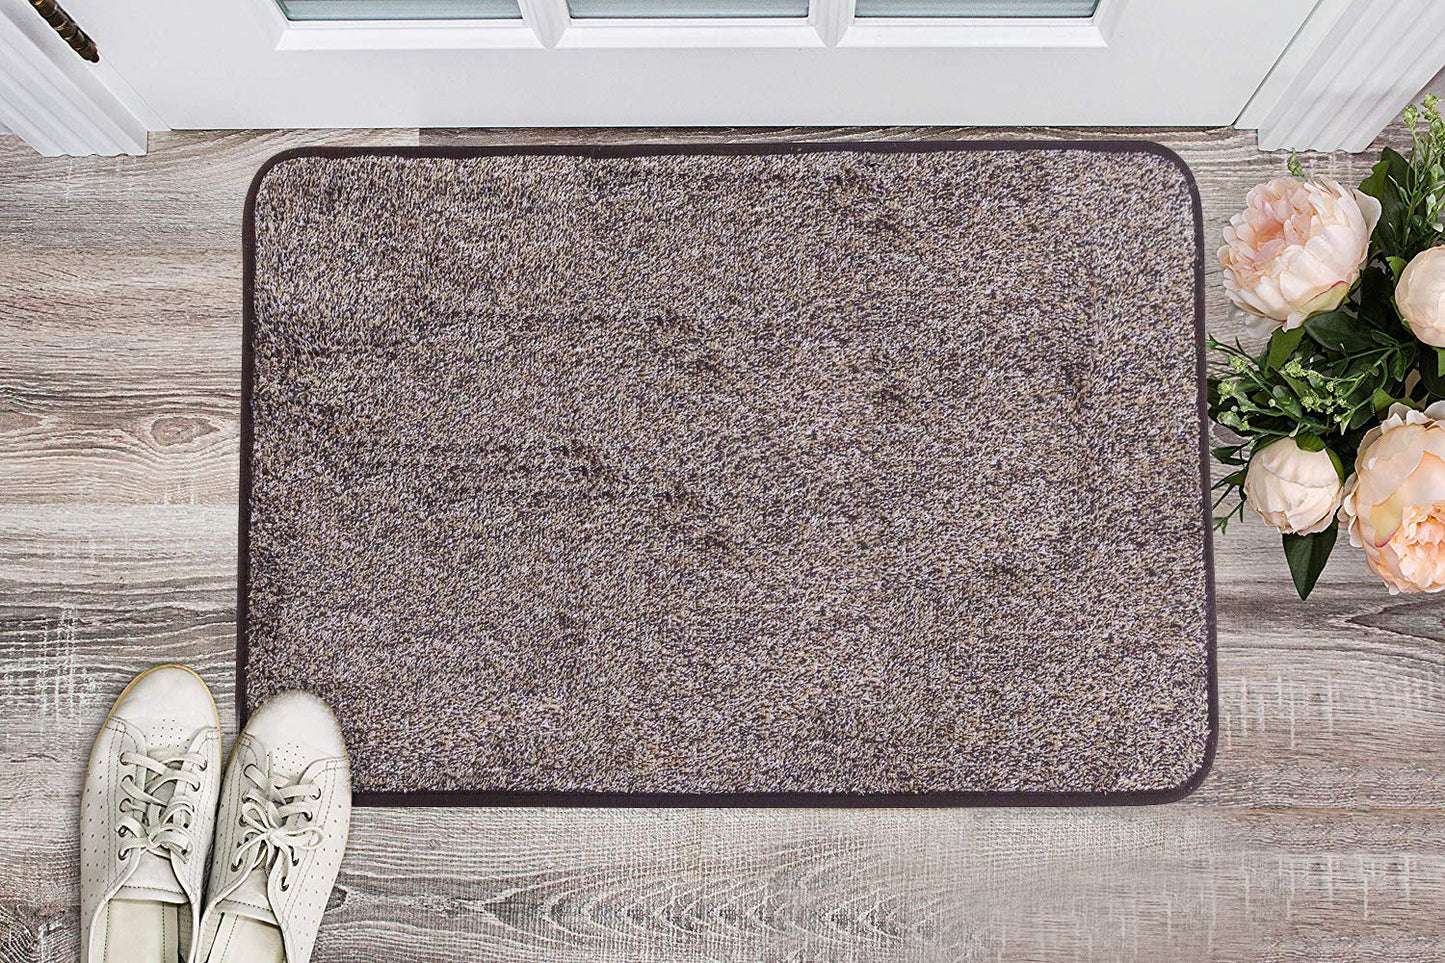 Absorbent DoorMat – Doormatly